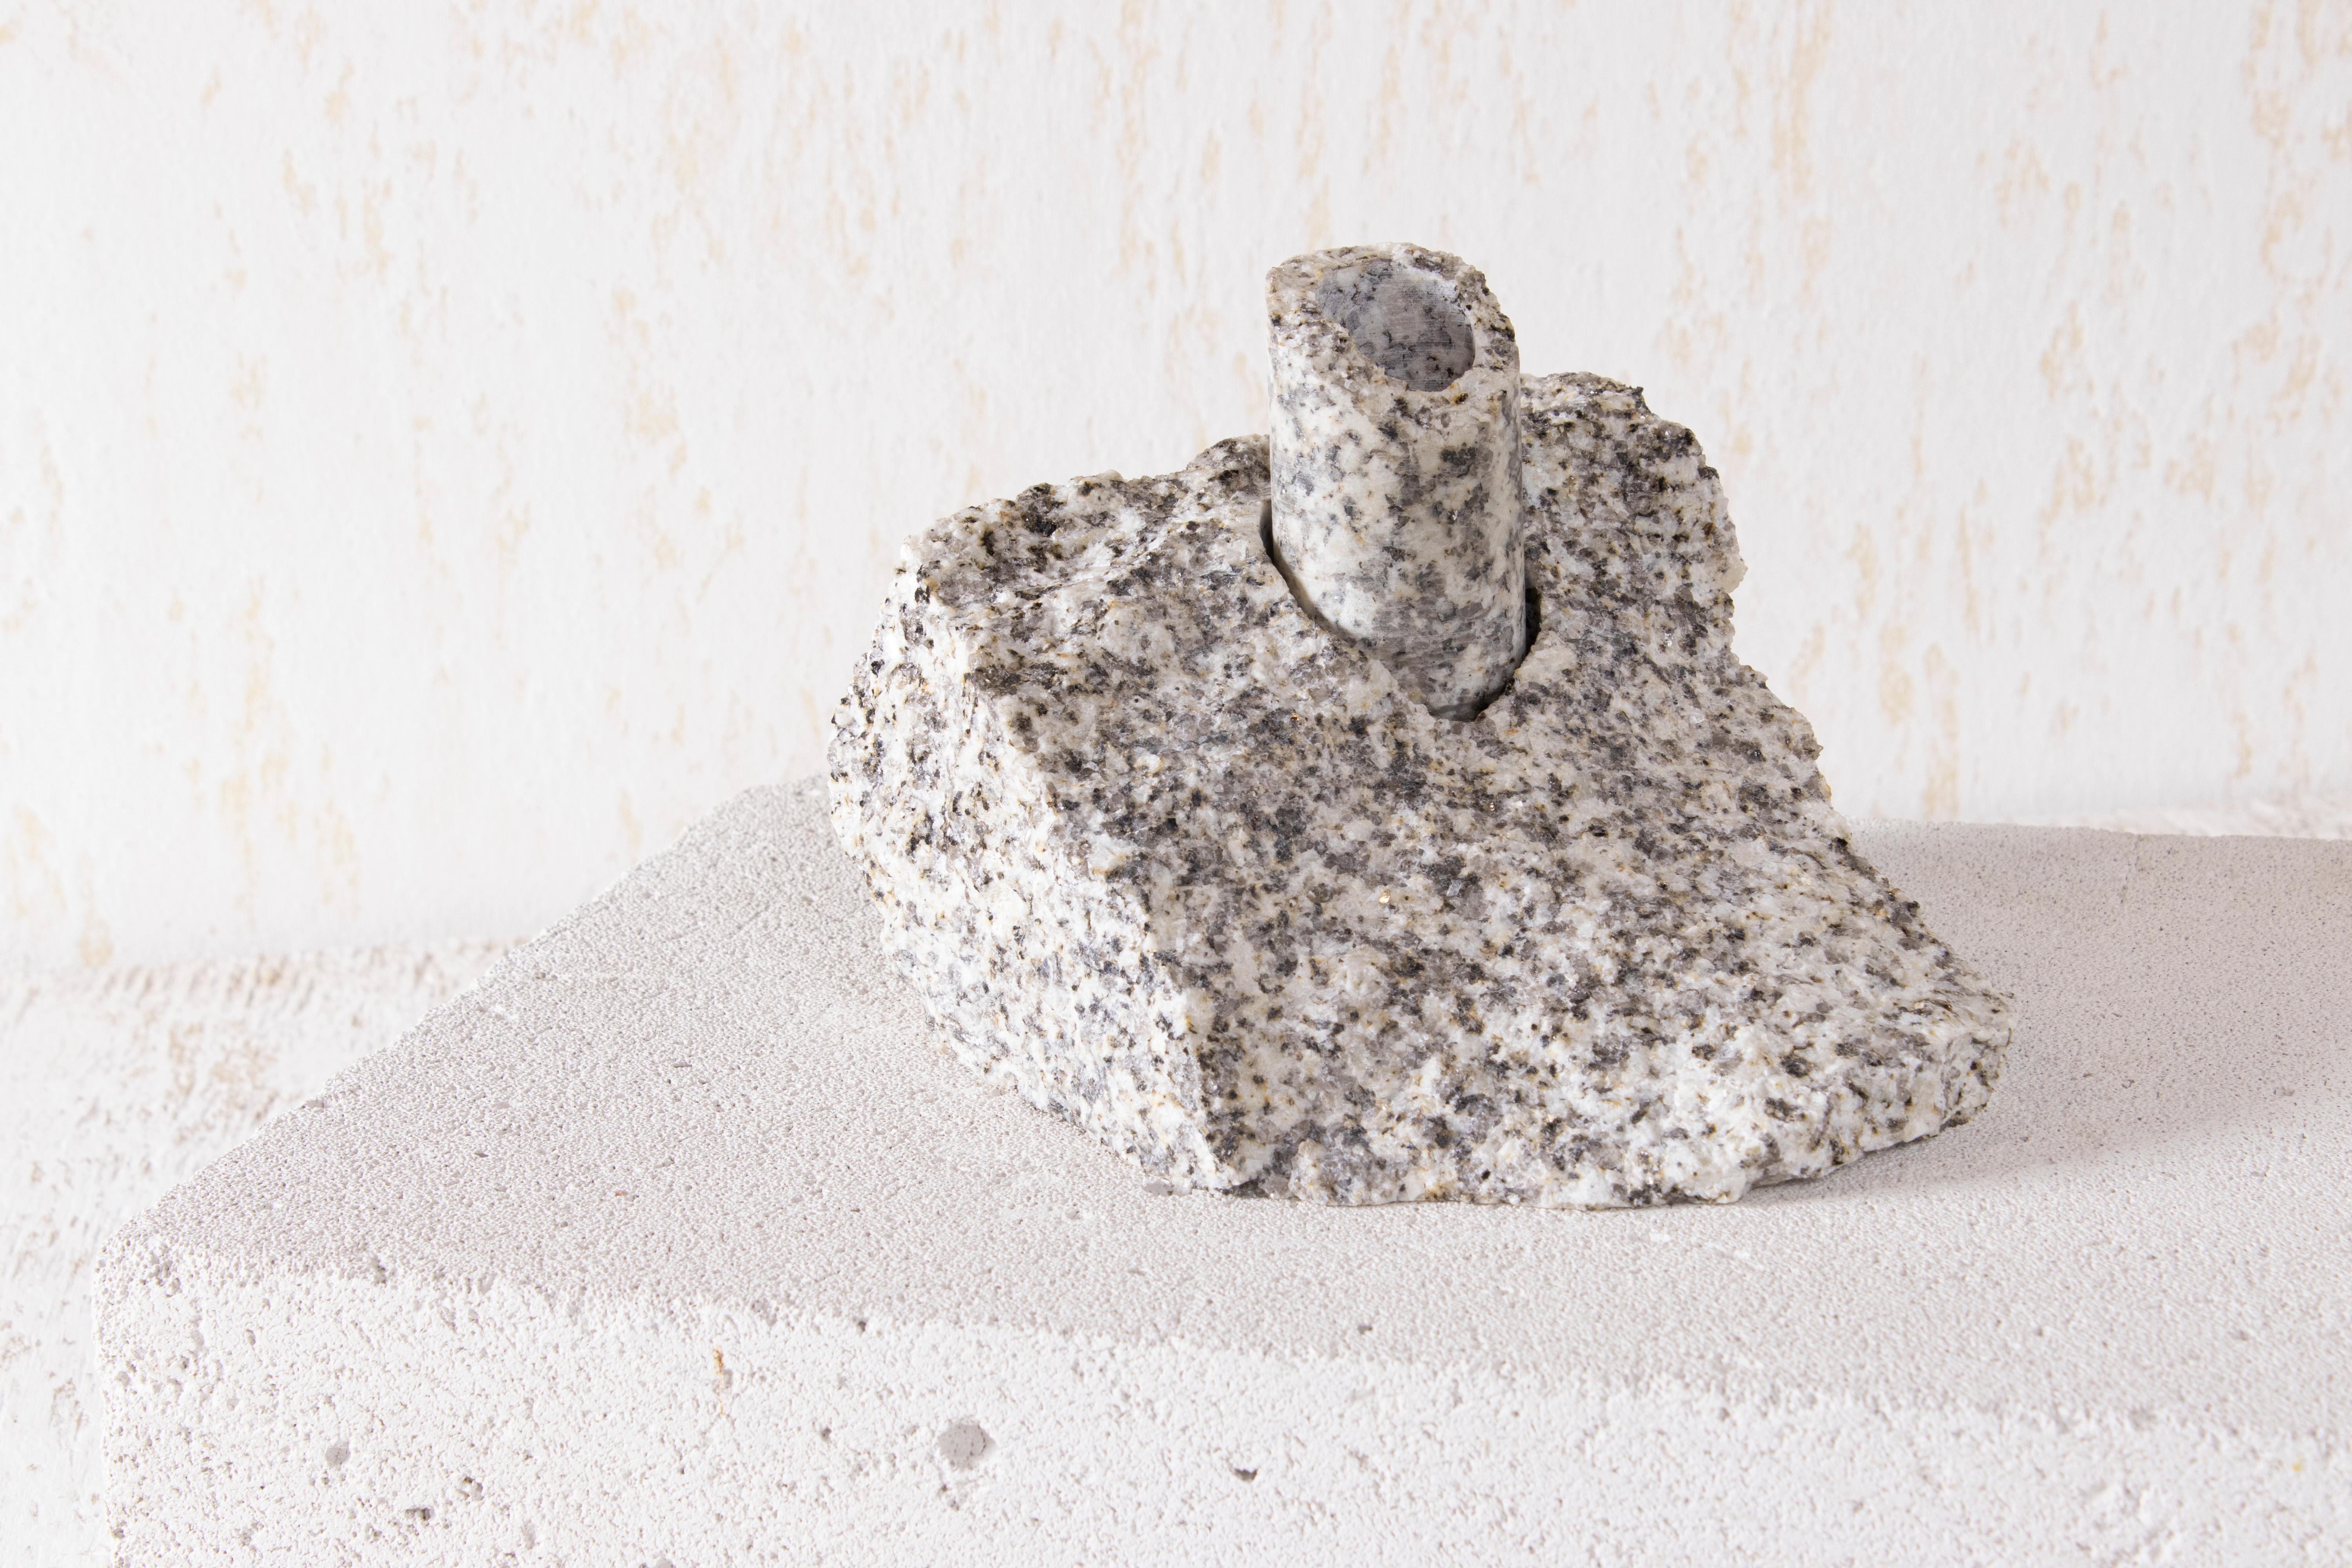 Weißer Granit Abra Candelabra II von Studio DO
Abmessungen: T 16 x B 12,5 x H 11,5 cm
MATERIALIEN: Granit, Aluminium.
2 kg.

Stein und Feuer sind durch ein zeitloses Band verbunden. Das Funkeln, das durch das Aufeinandertreffen zweier Steine